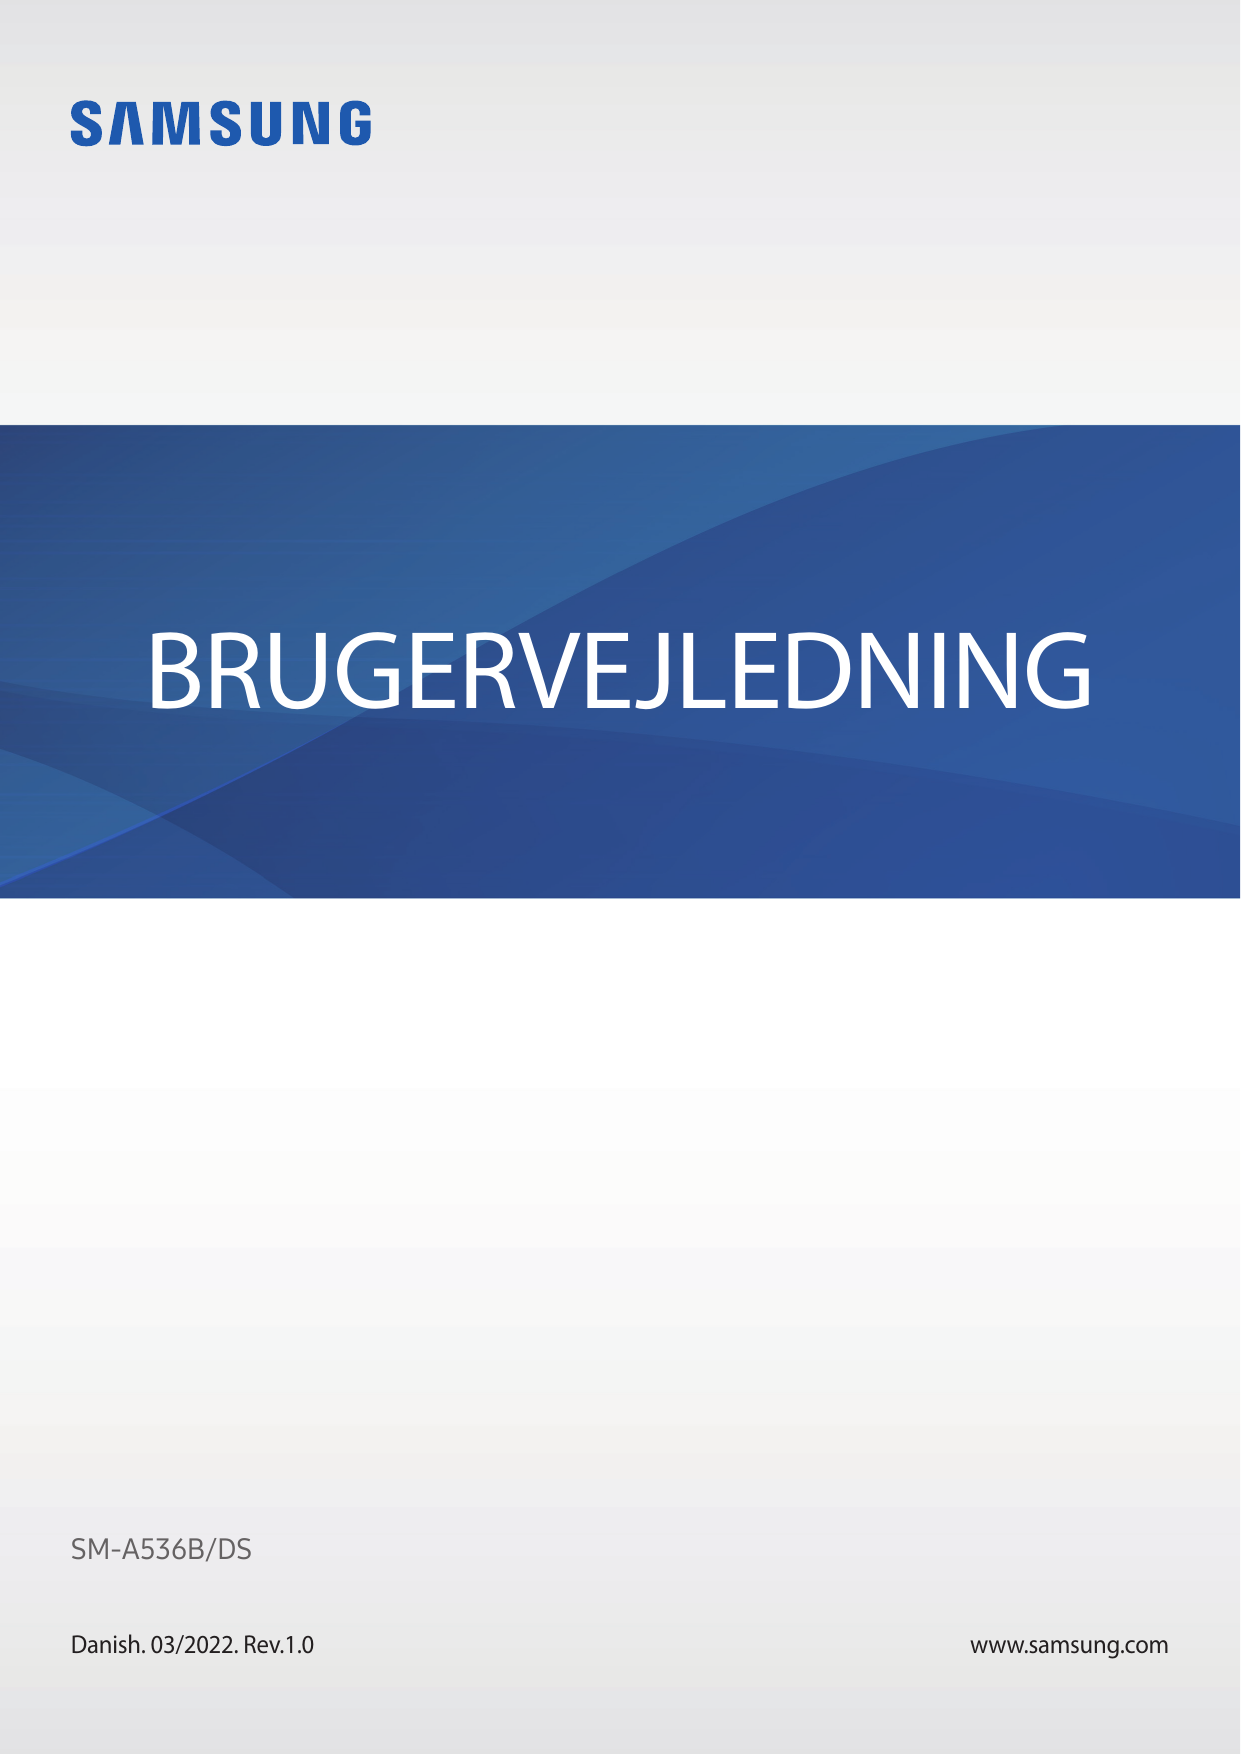 BRUGERVEJLEDNINGSM-A536B/DSDanish. 03/2022. Rev.1.0www.samsung.com